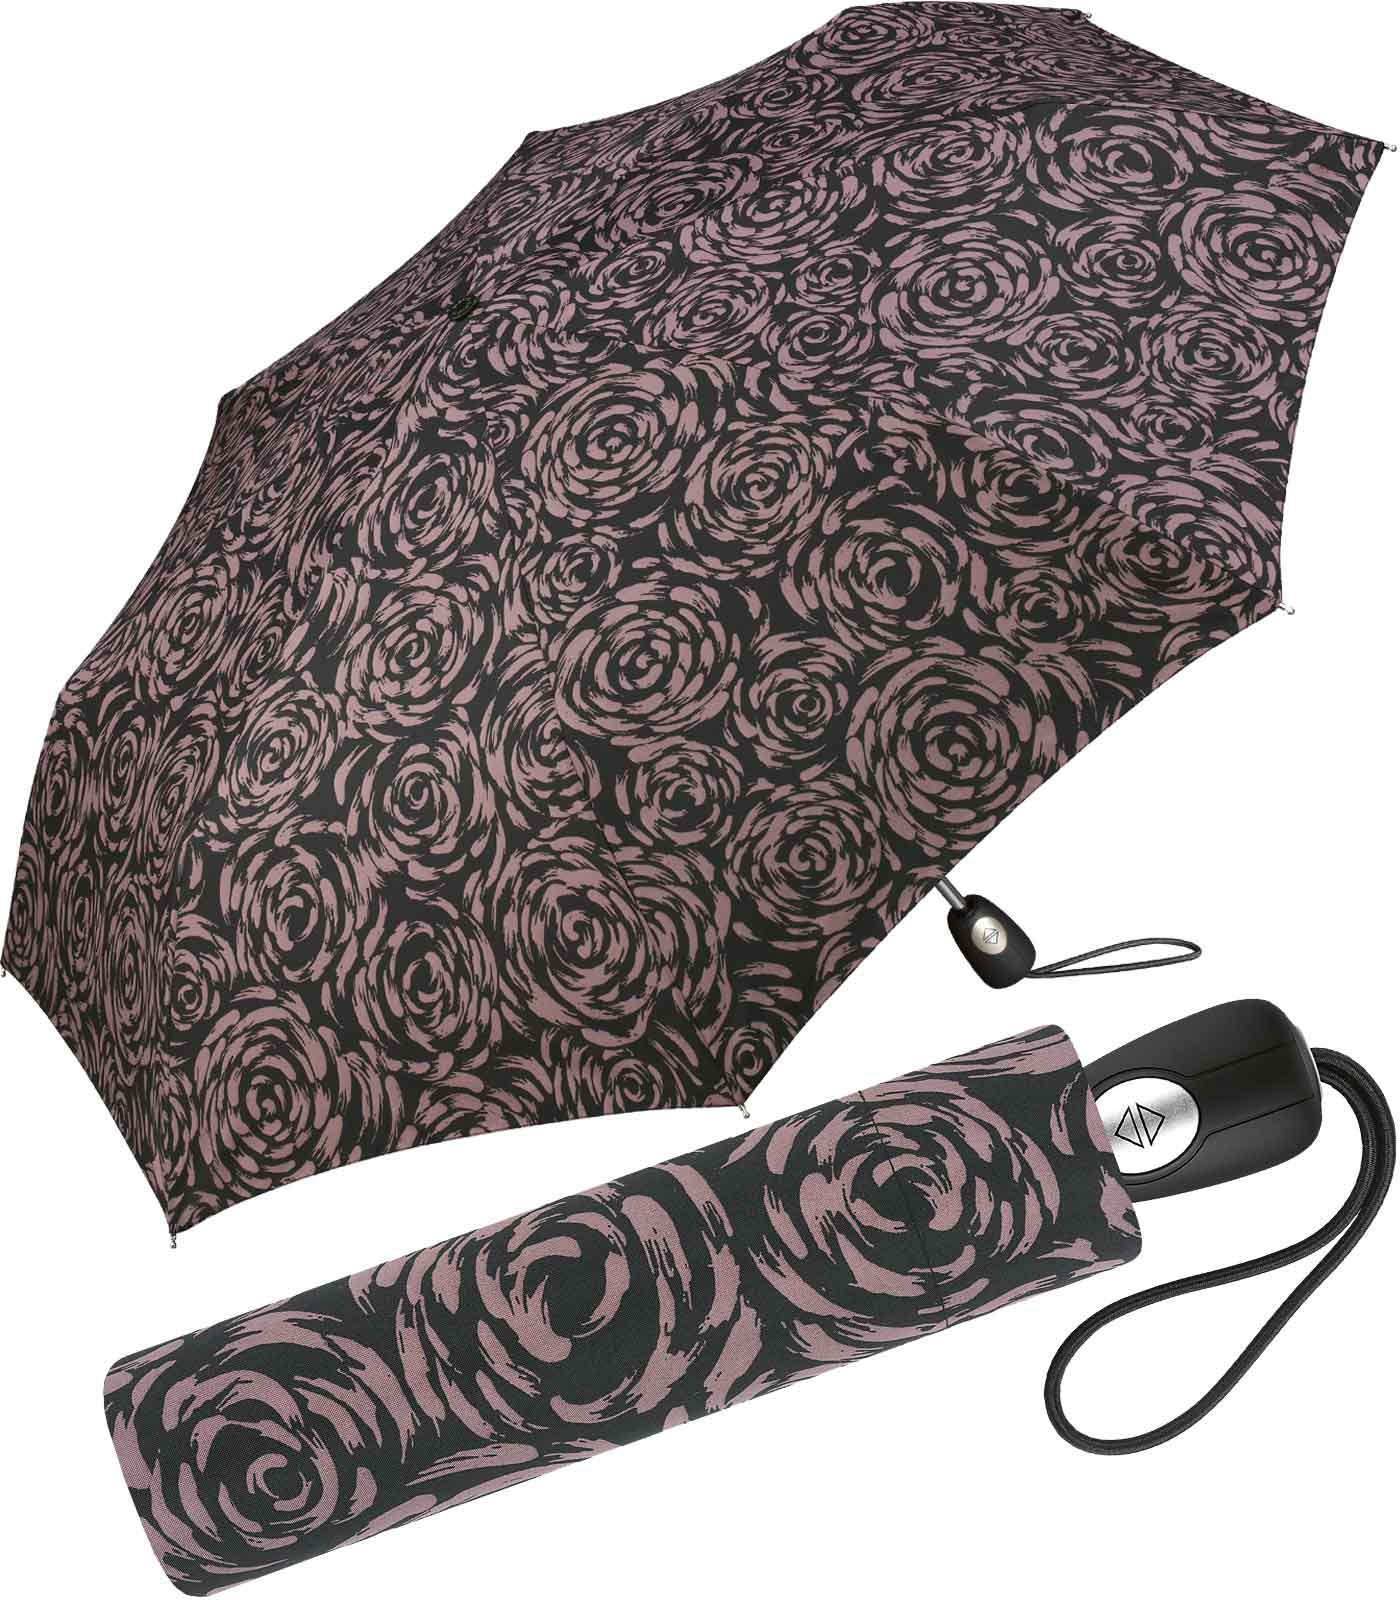 Pierre Cardin Taschenregenschirm schöner Damen-Regenschirm mit Auf-Zu-Automatik, mit wunderschöner Rosenblütenmalerei mauve